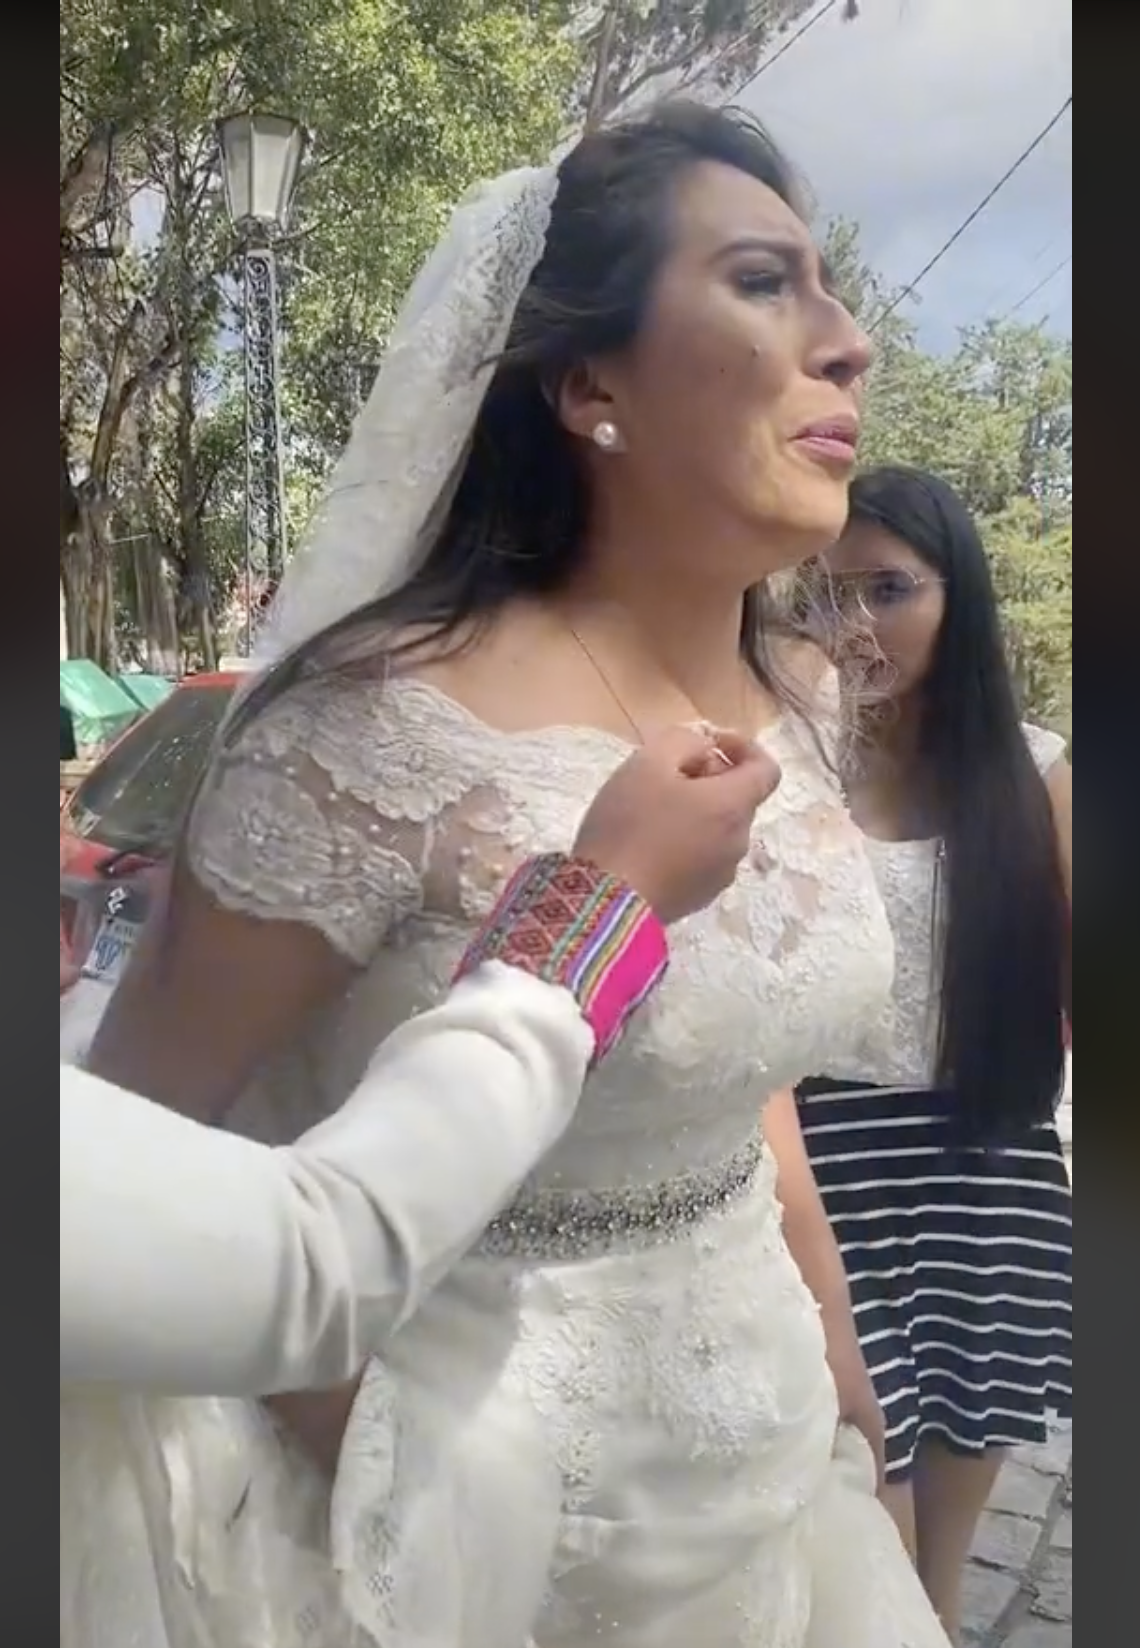 La novia sufre un colapso emocional. | Foto: tiktok.com/@santosyudai